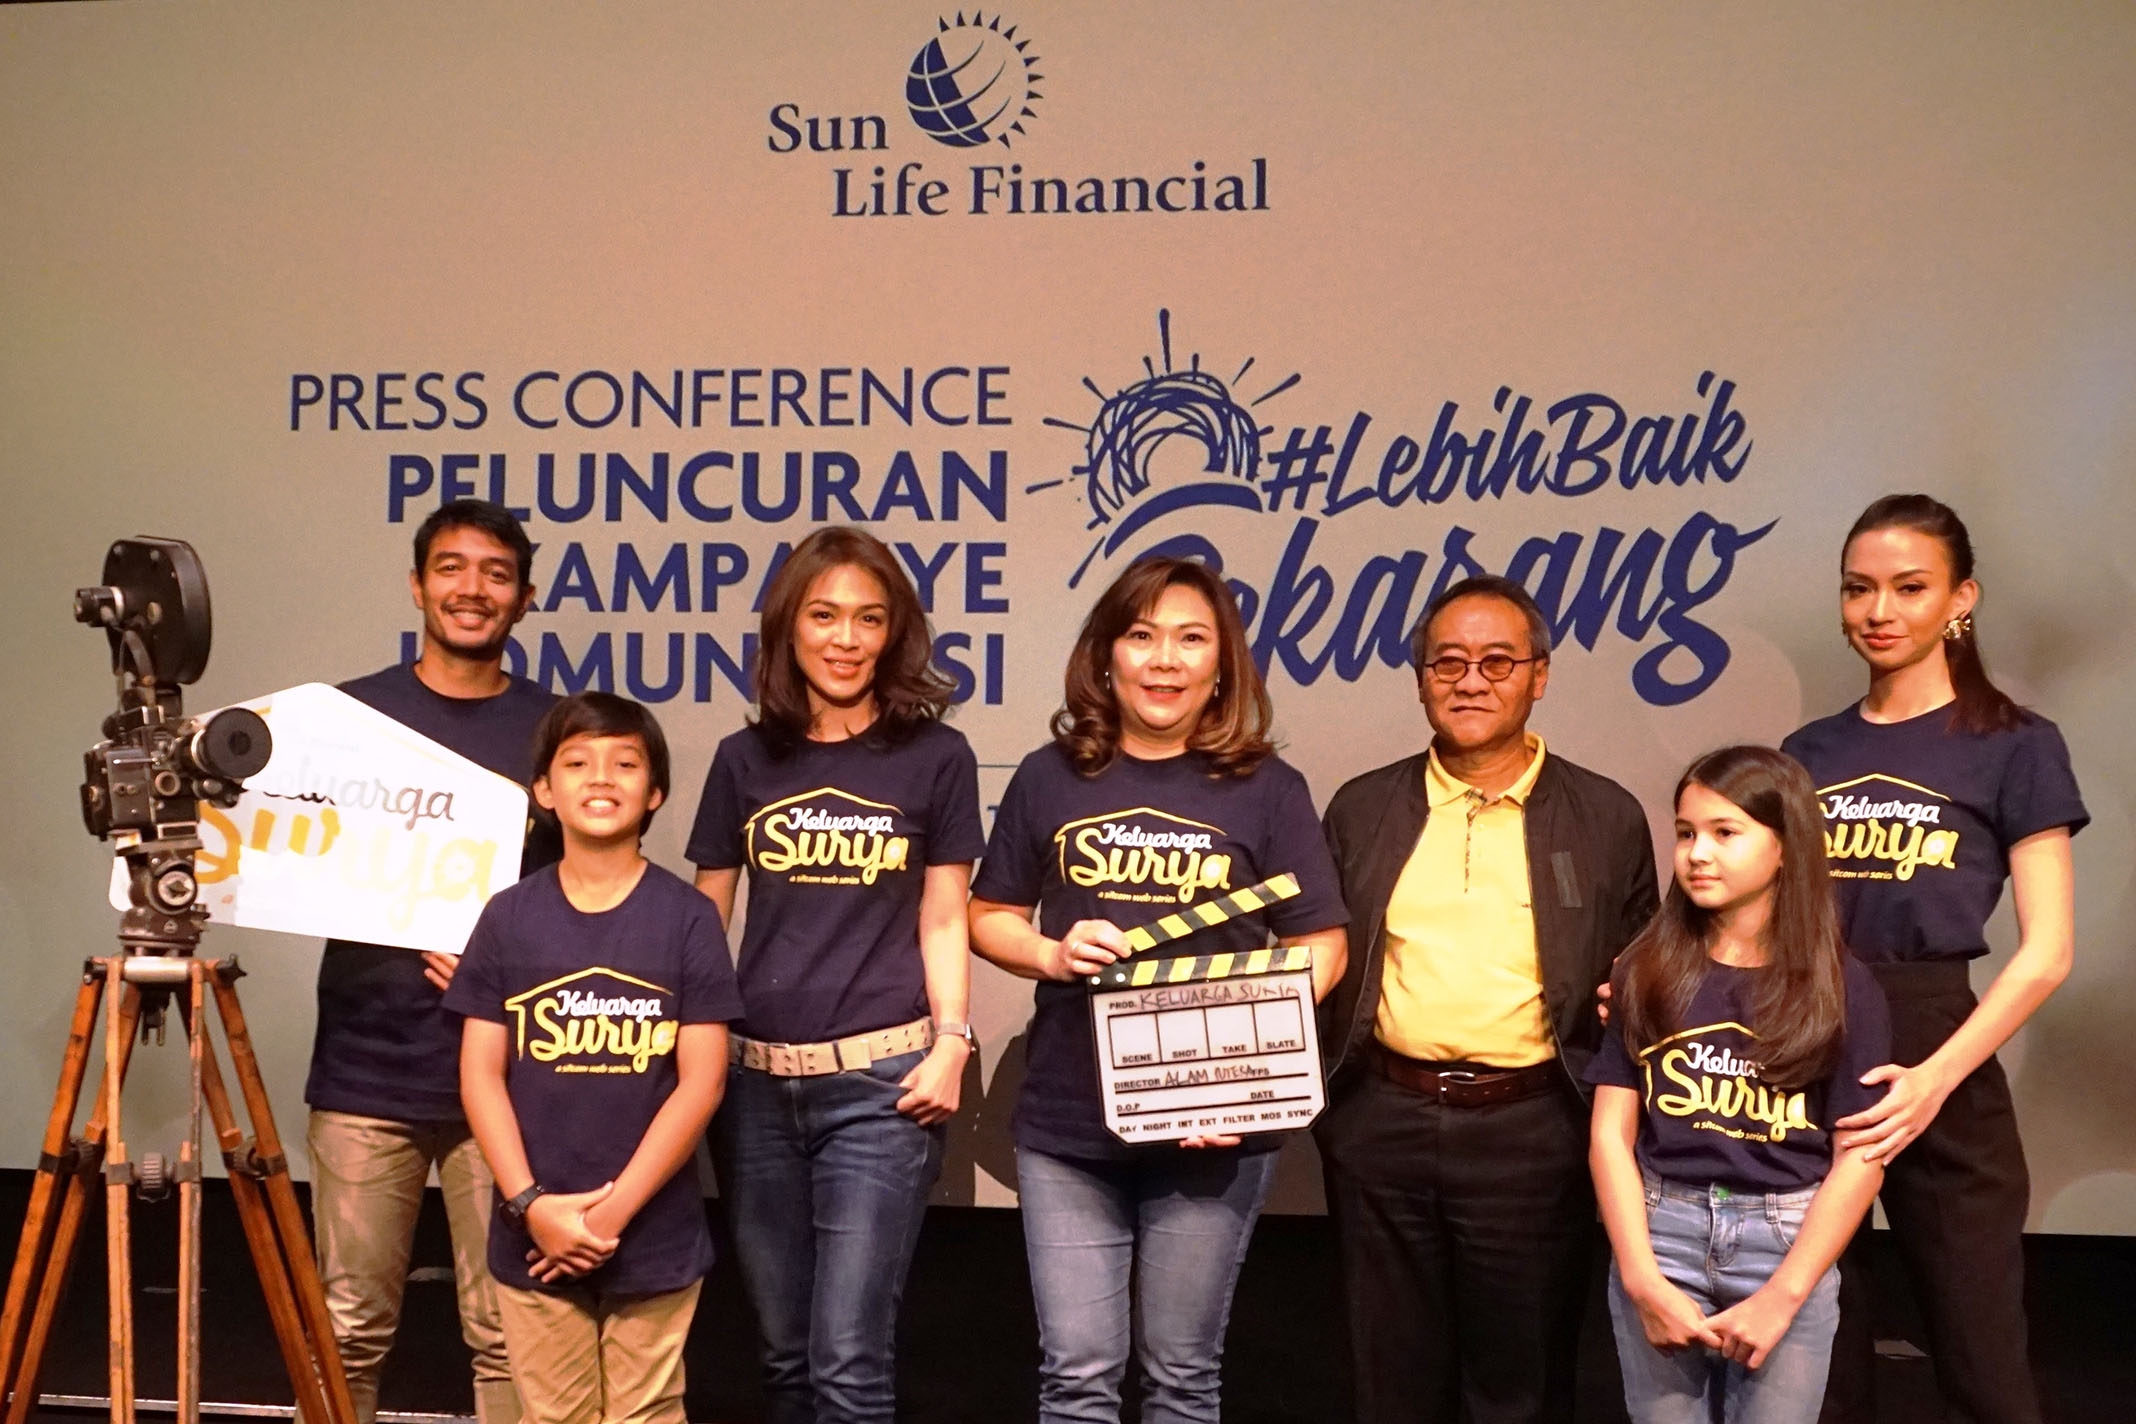 Sun Life Financial Indonesia Bantu Peningkatan Literasi Keuangan melalui Kampanye Komunikasi #LebihBaik Sekarang